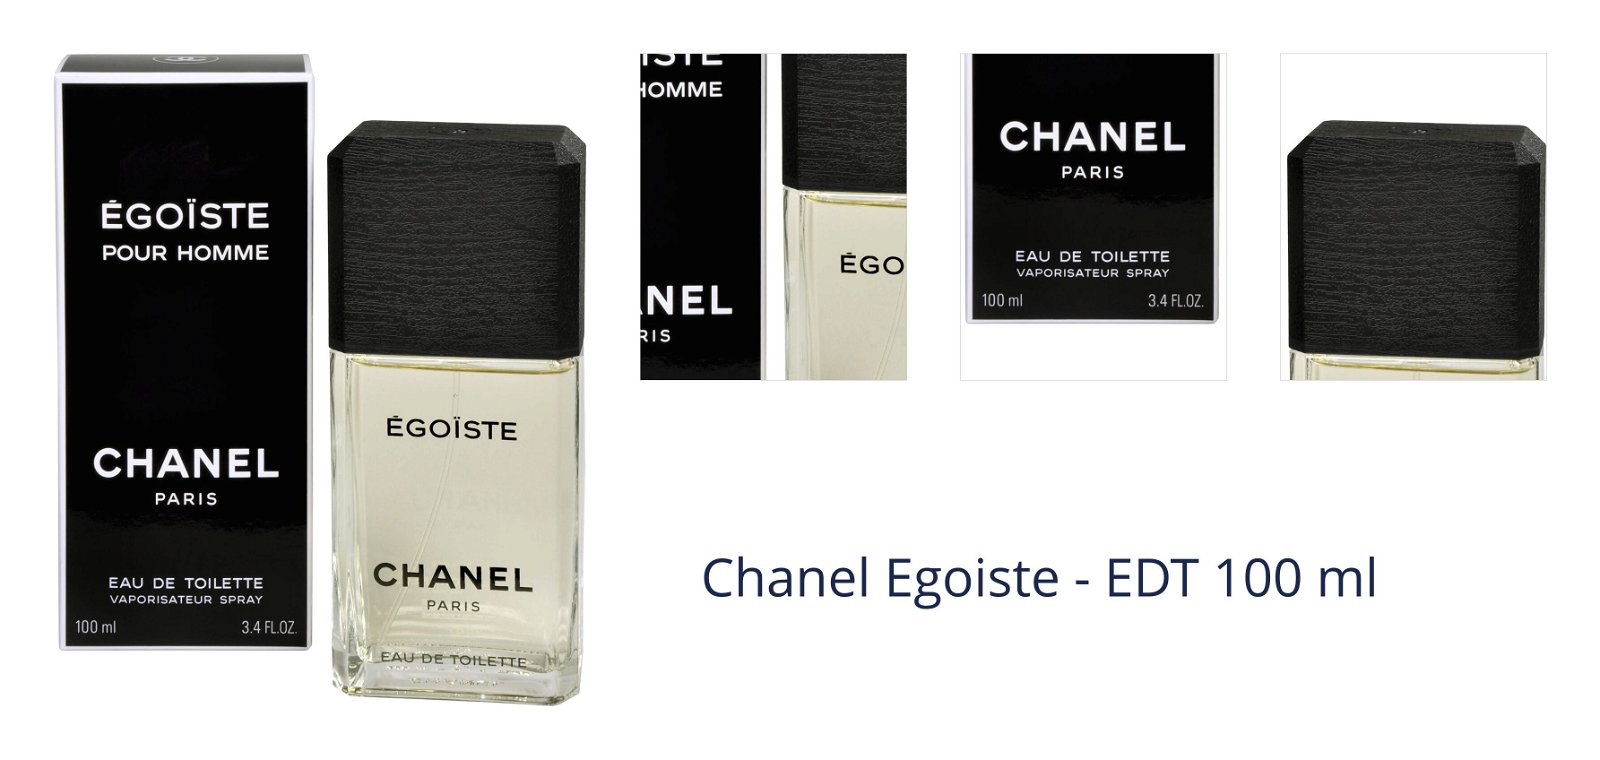 Chanel Egoiste - EDT 100 ml 7